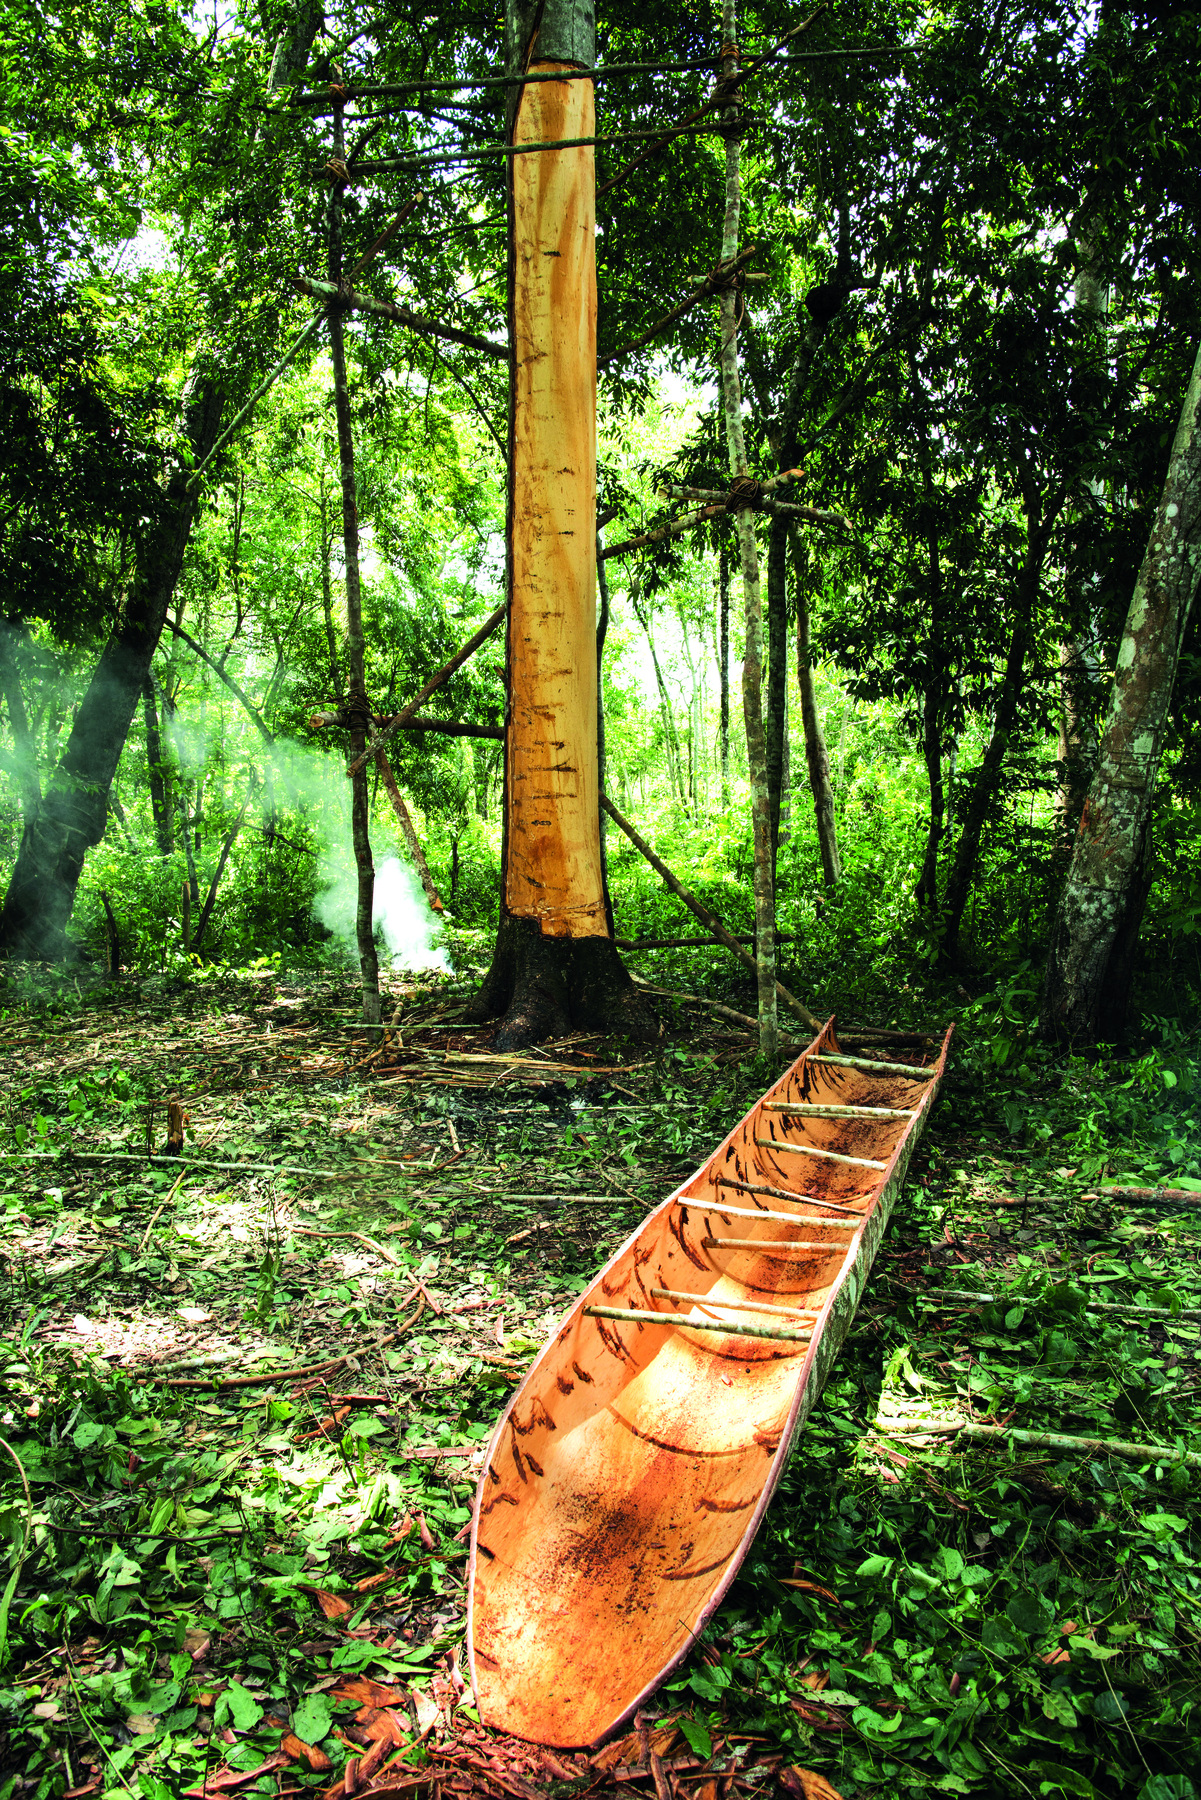 Fotografia. Em uma área no interior de uma floresta de copas altas, destaque para uma canoa de madeira feita com parte do tronco de uma árvore. Ao fundo, uma árvore com o tronco cortado no meio. Ao redor há vegetação rasteira e árvores altas.